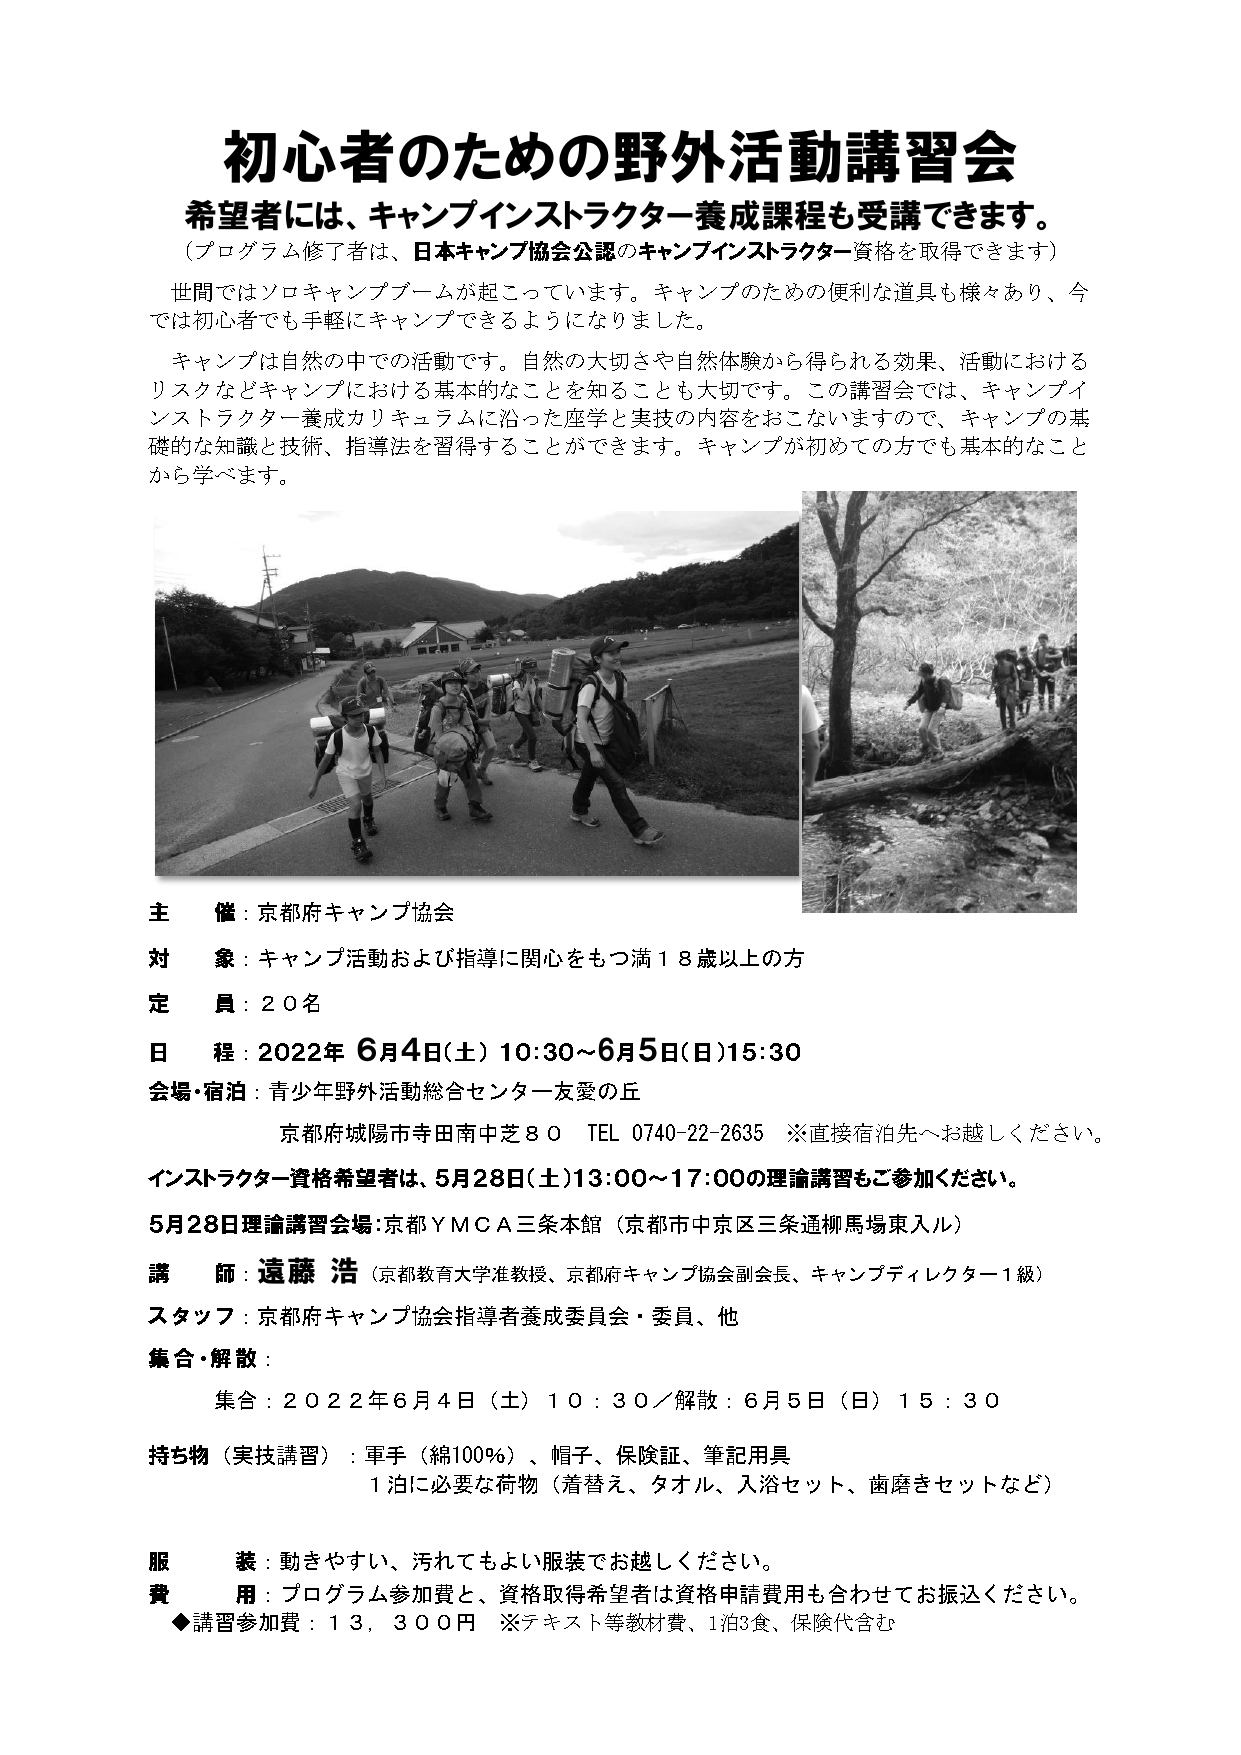 京都：初心者のための野外活動講習会（5/28・6/4～5） @ 青少年野外活動センター友愛の丘